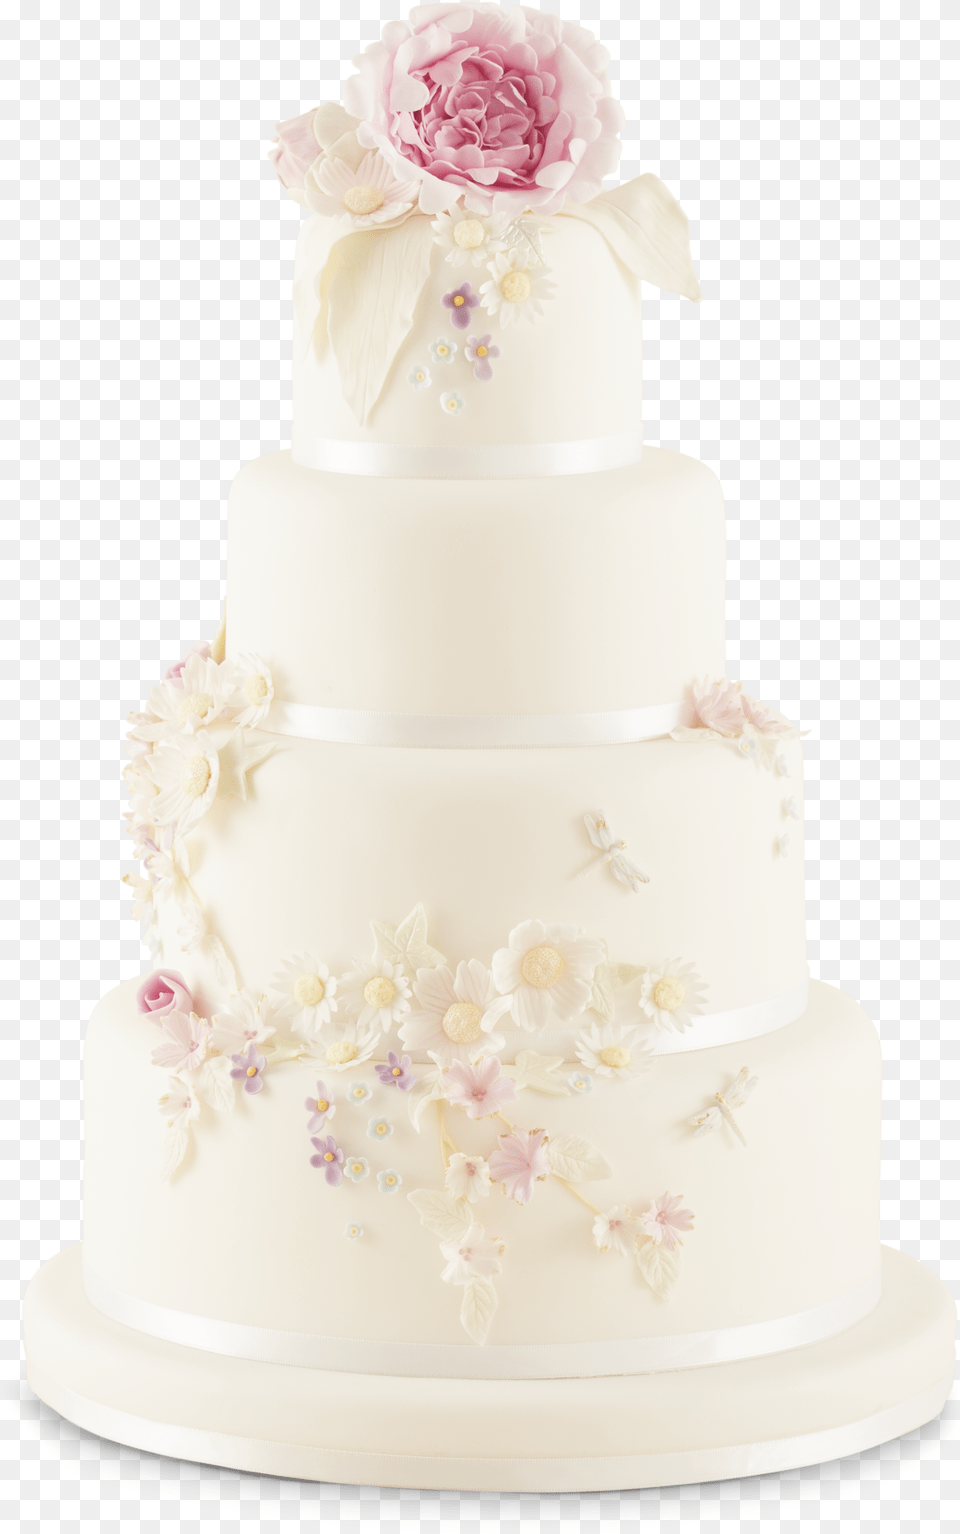 Enchanted Garden Wedding Cake, Dessert, Food, Wedding Cake Free Transparent Png